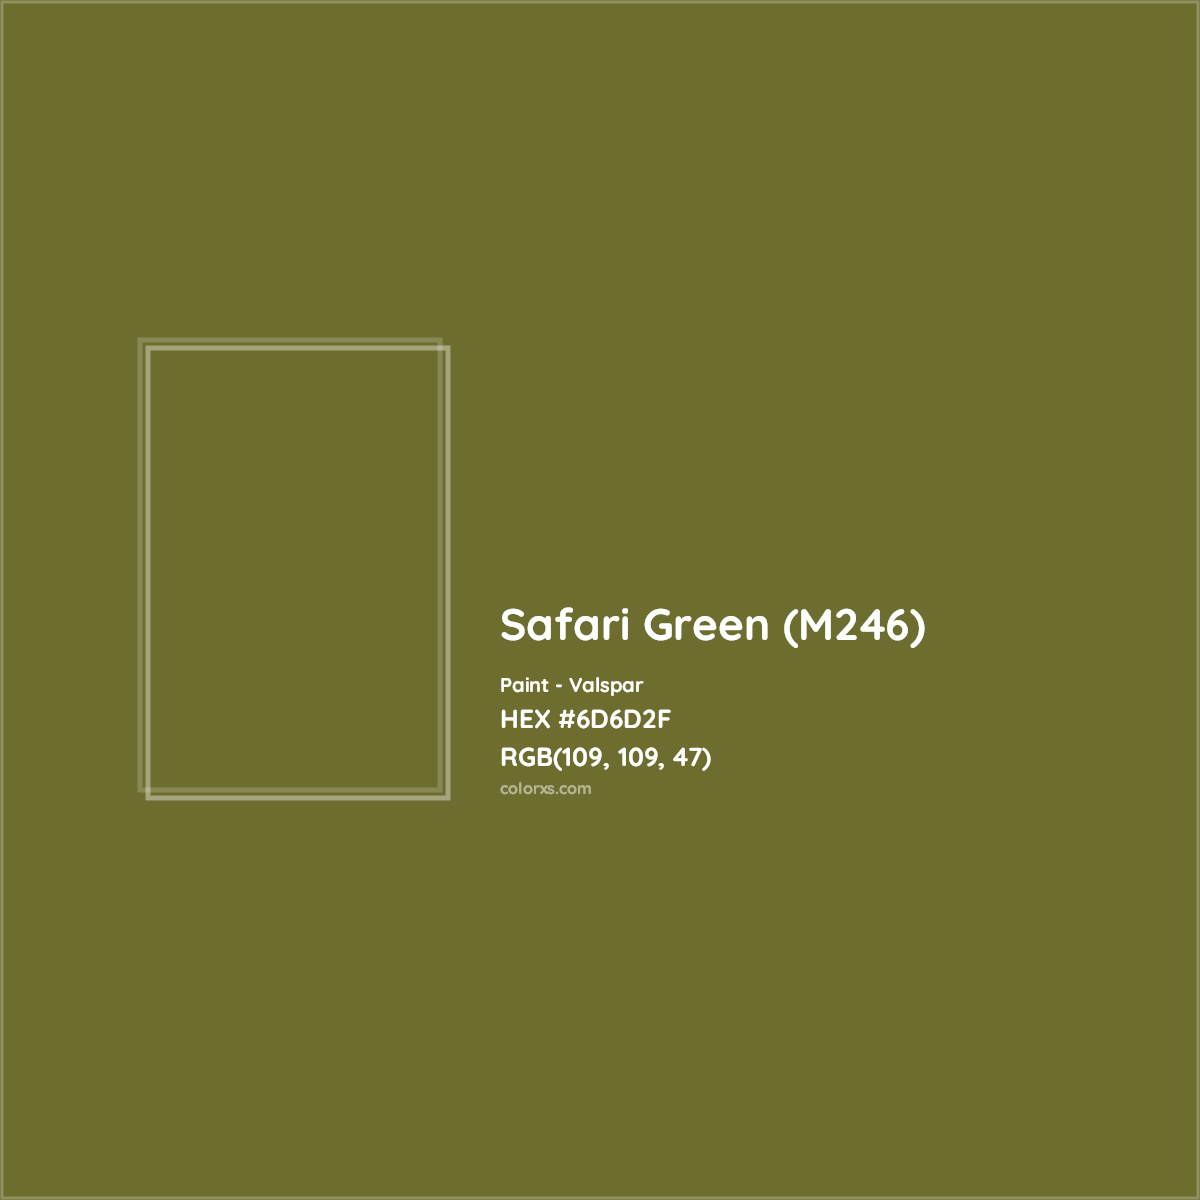 HEX #6D6D2F Safari Green (M246) Paint Valspar - Color Code